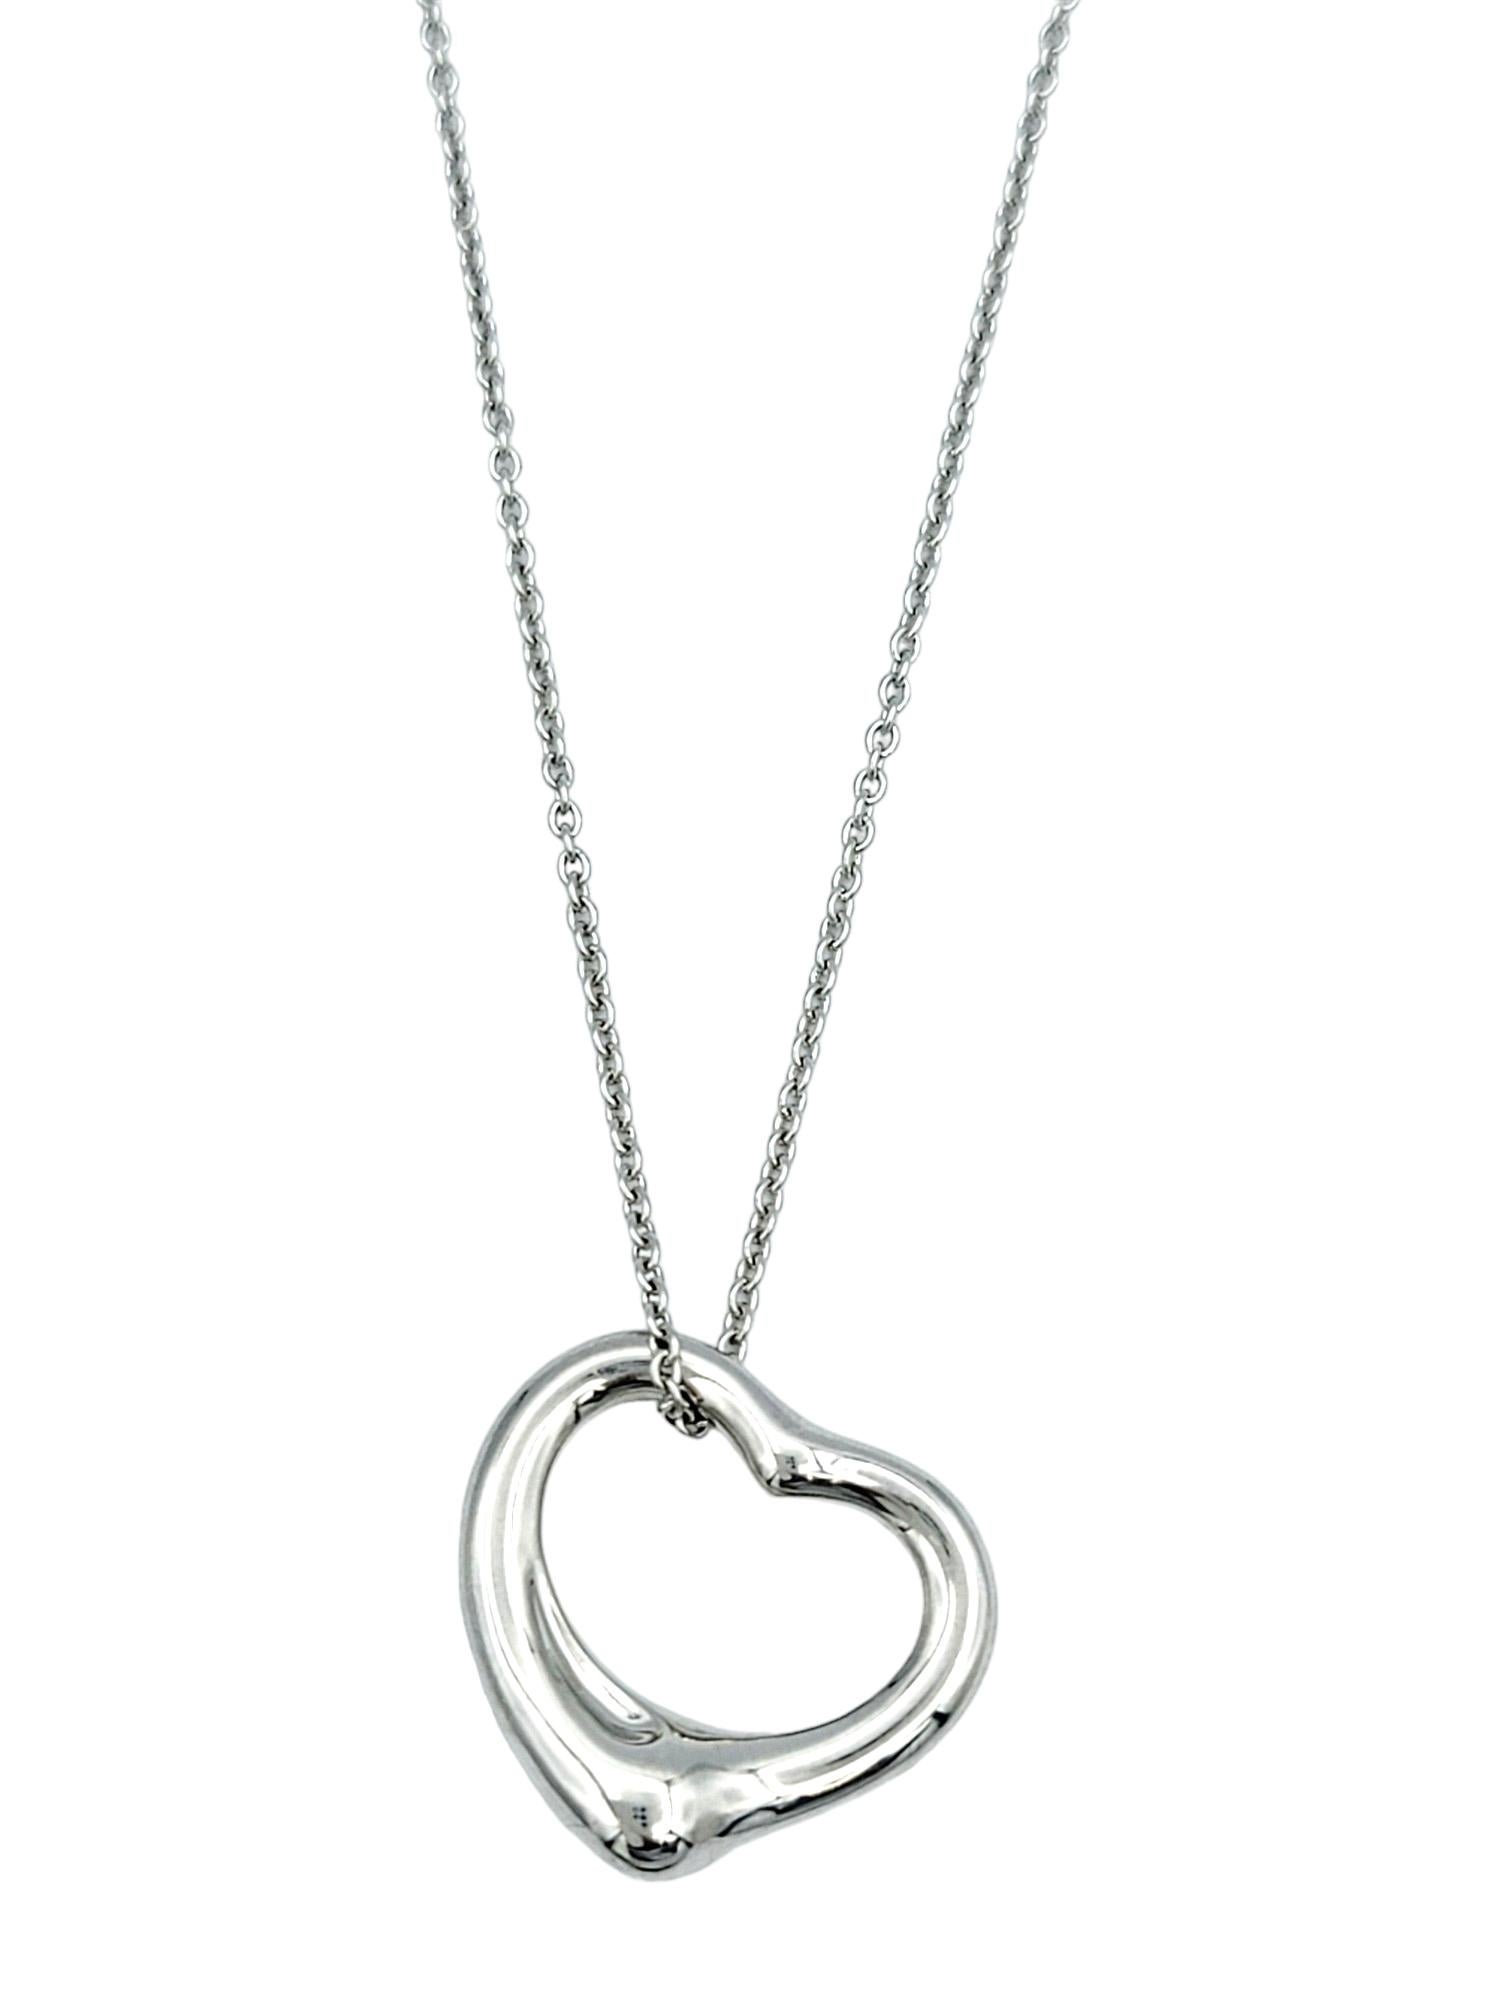 Diese Tiffany & Co. Die aus luxuriösem Platin gefertigte Open Heart Necklace von Elsa Peretti ist ein zeitloses und ikonisches Schmuckstück. Diese von der bekannten Künstlerin Elsa Peretti entworfene Halskette mit einem zarten, offenen Herzanhänger